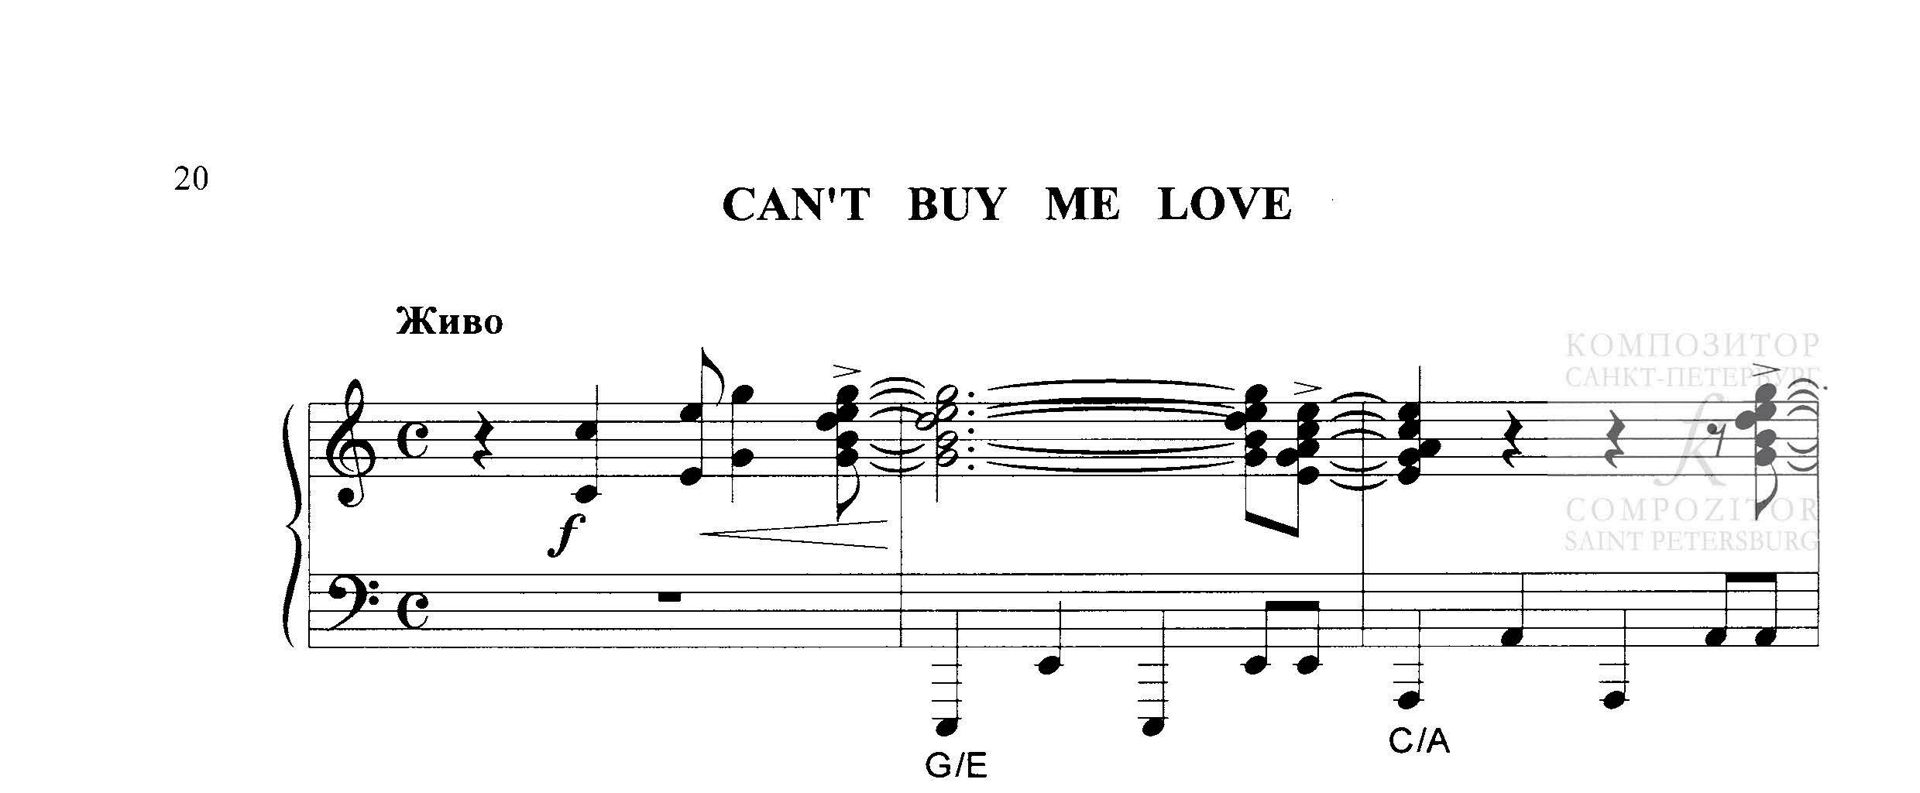 The Beatles. Can’t Buy Me Love. Песня Битлз в легком переложении для фортепиано (гитары)